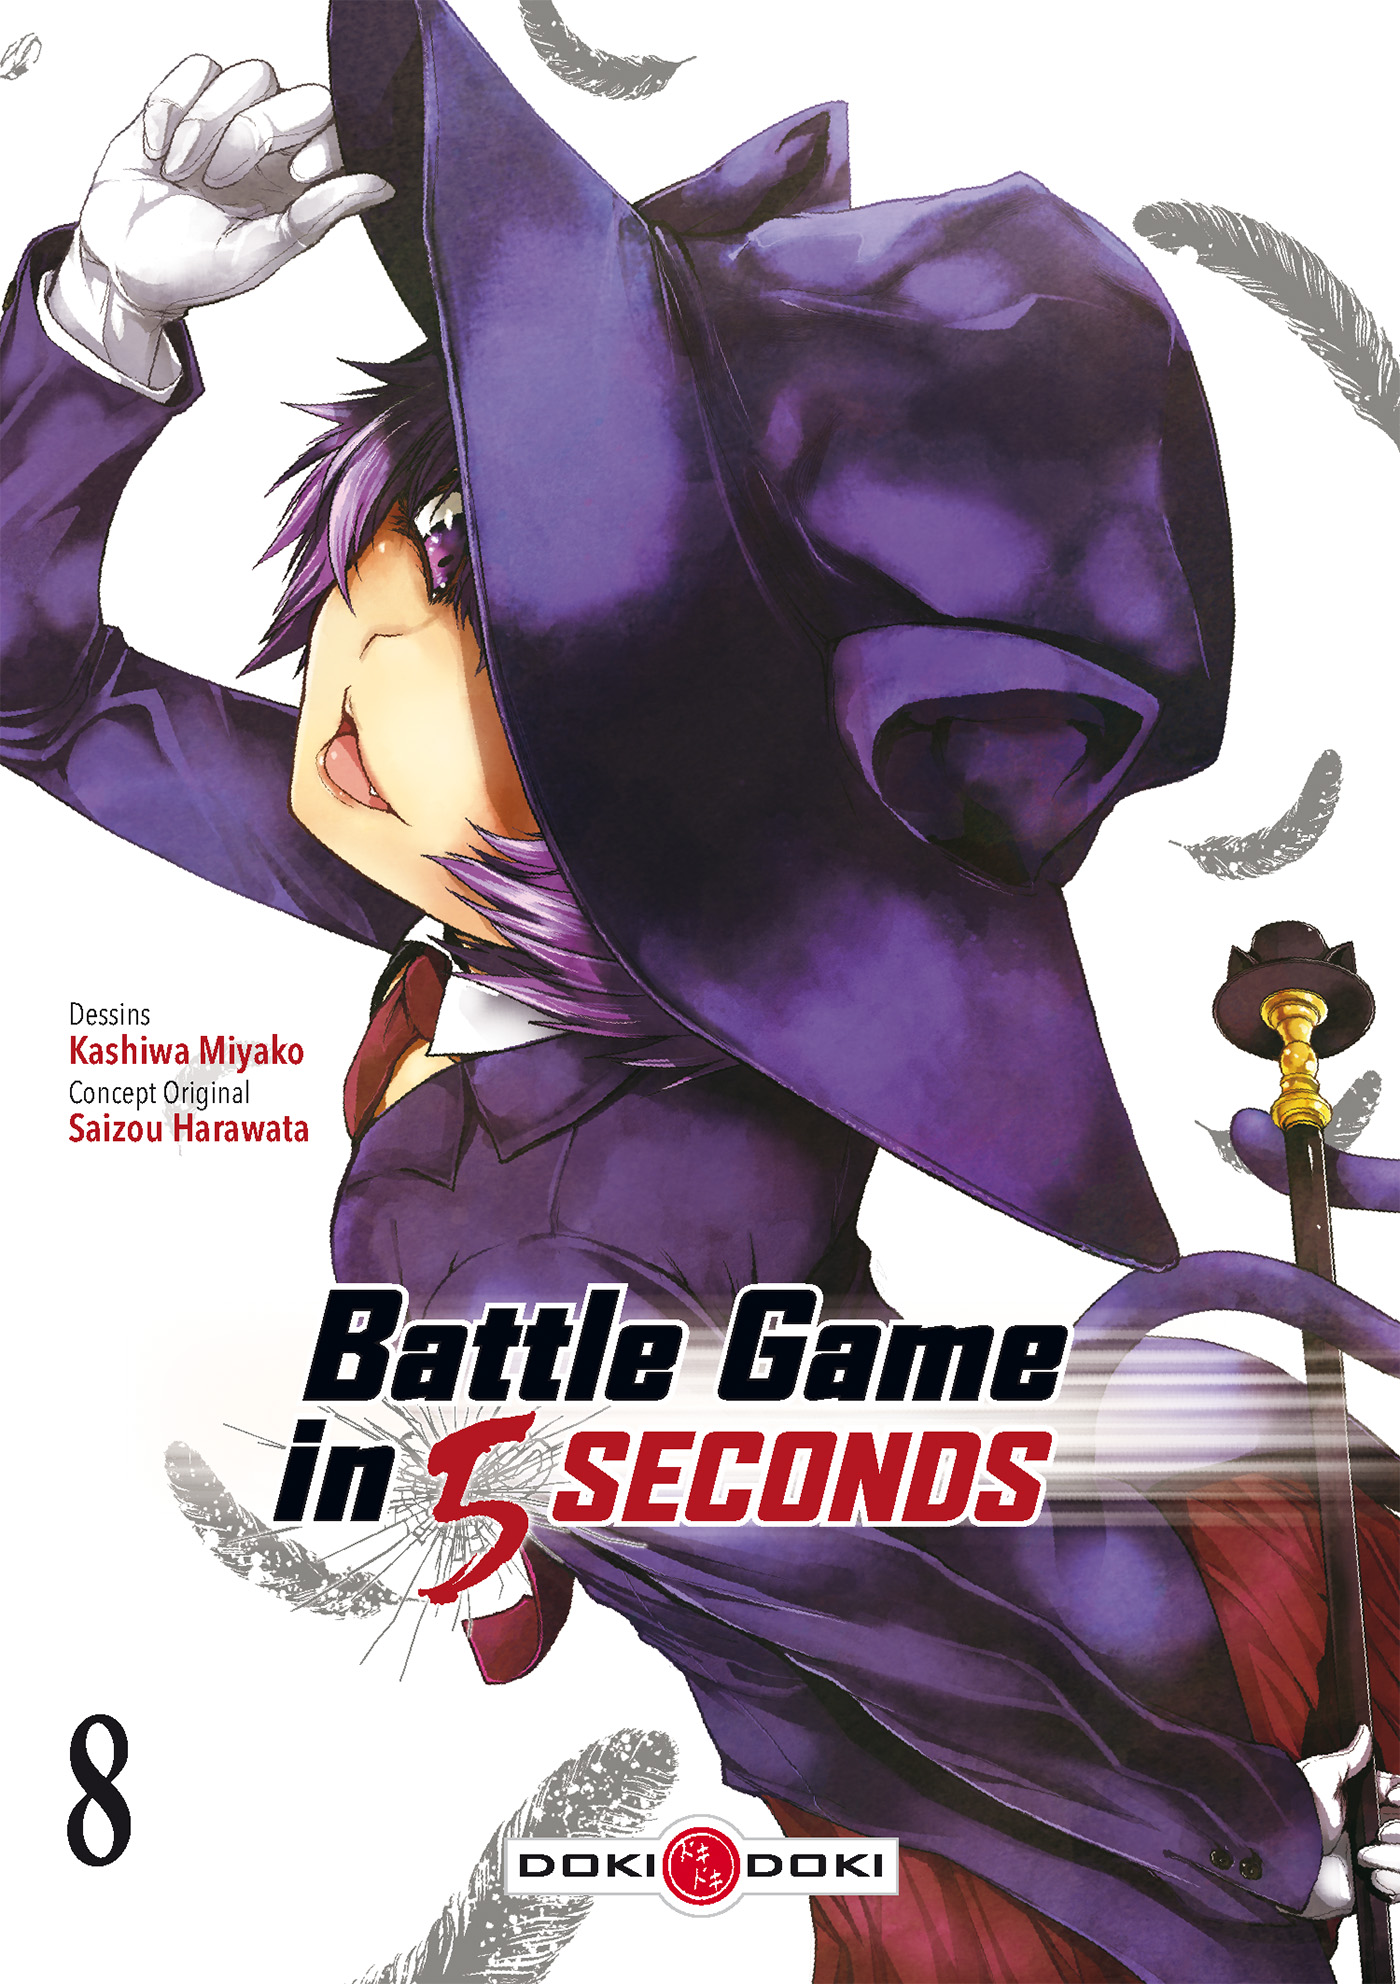 Battle Game in 5 seconds #8 (Doki-Doki, 2019) - La Ribambulle - Battle Game In 5 Seconds Ending Explained